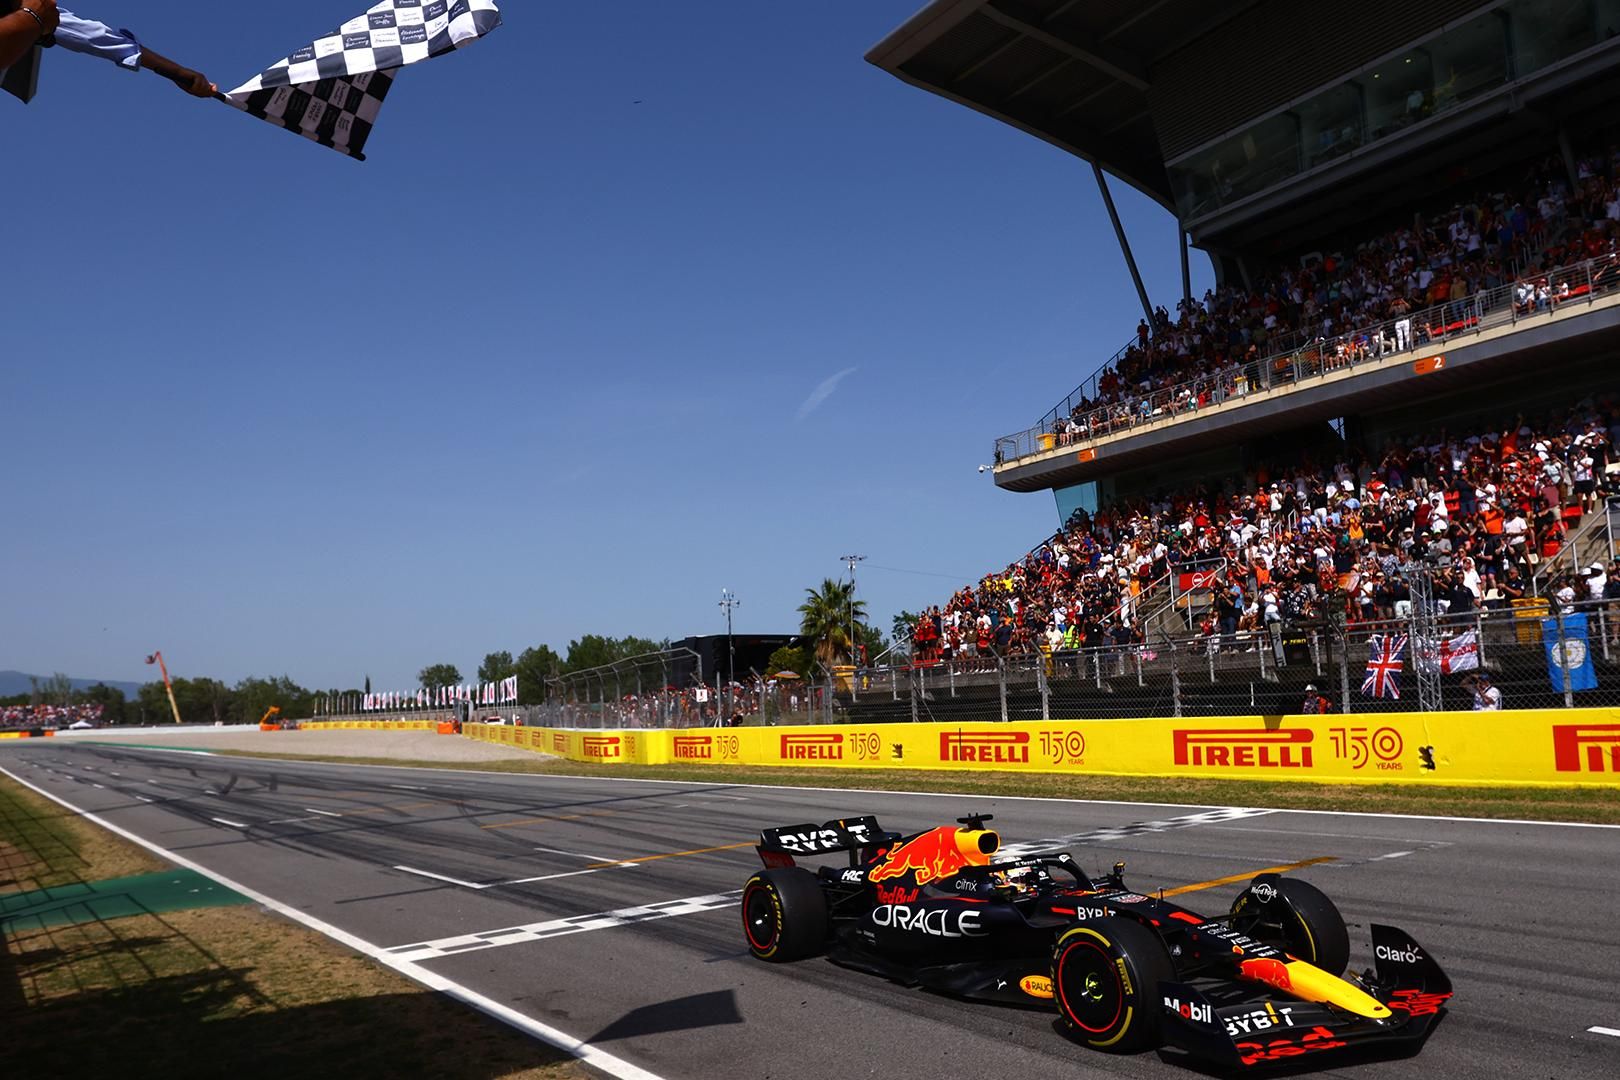 GP dos EUA de F1: Verstappen lidera treino único, fórmula 1